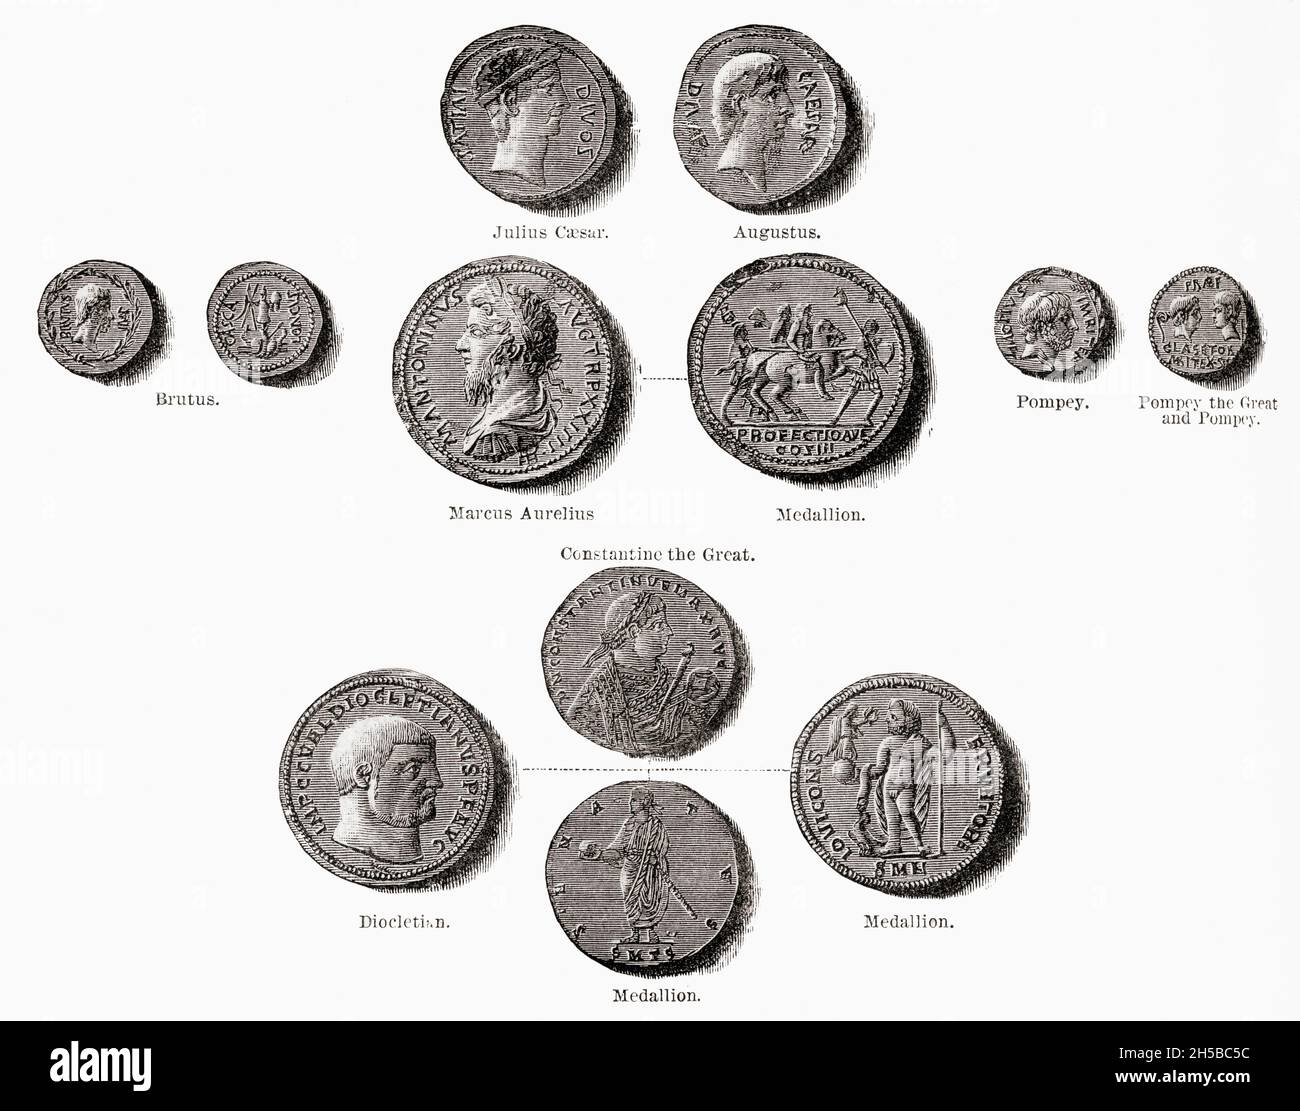 Münzen der Römischen Republik und des Reiches. Aus Cassells Illustrated Universal History, veröffentlicht 1883. Stockfoto